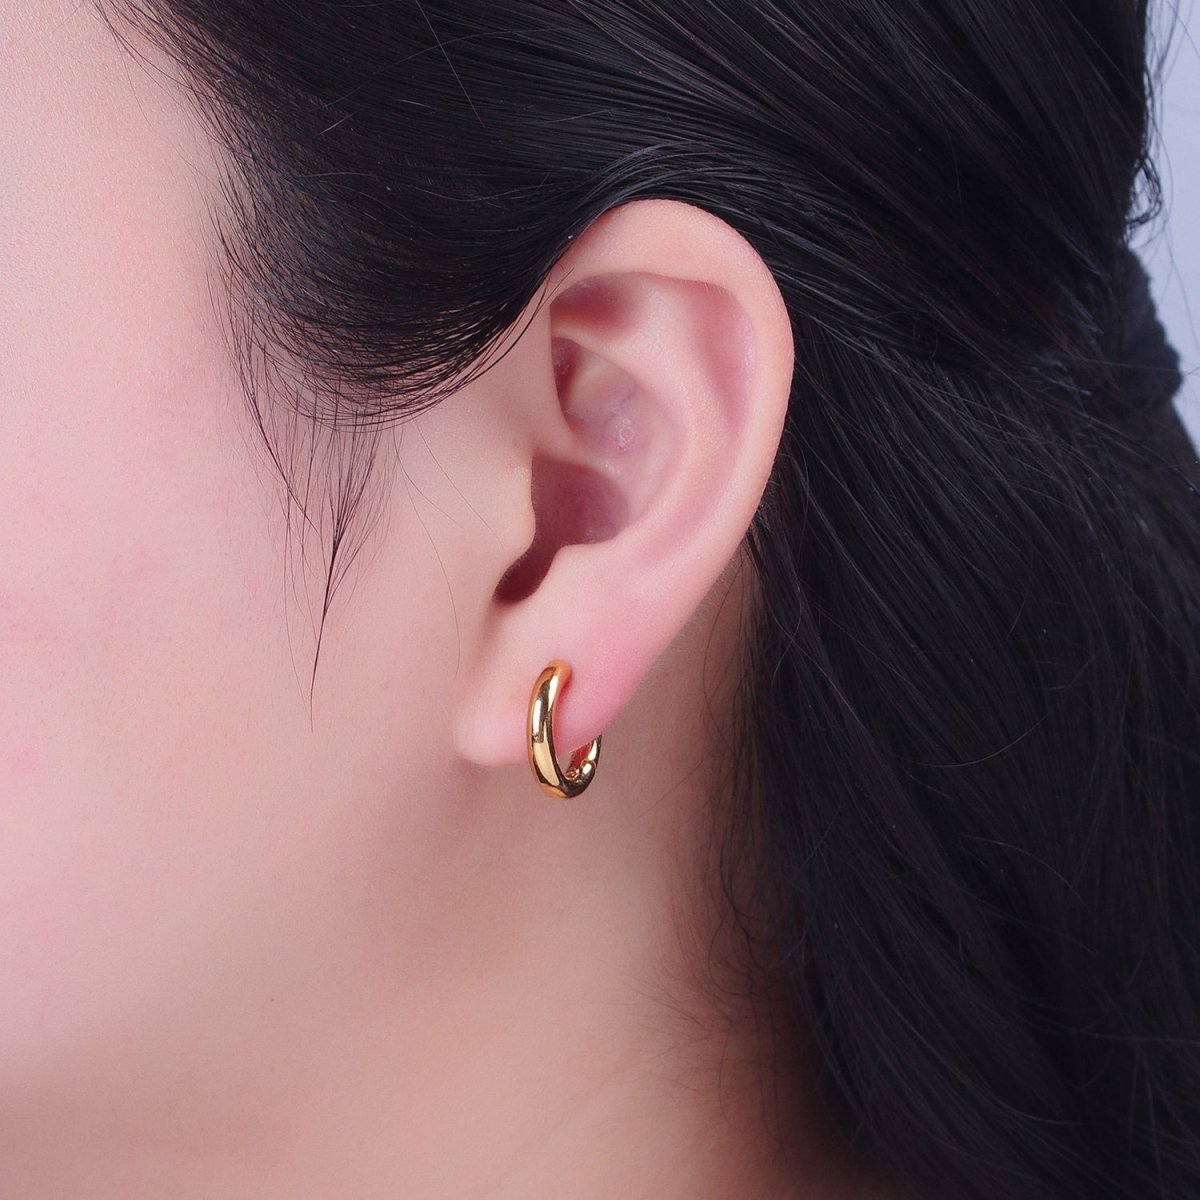 OS 24K Gold Filled 16mm Minimalist Huggie Hoop Earrings | P-407 - DLUXCA